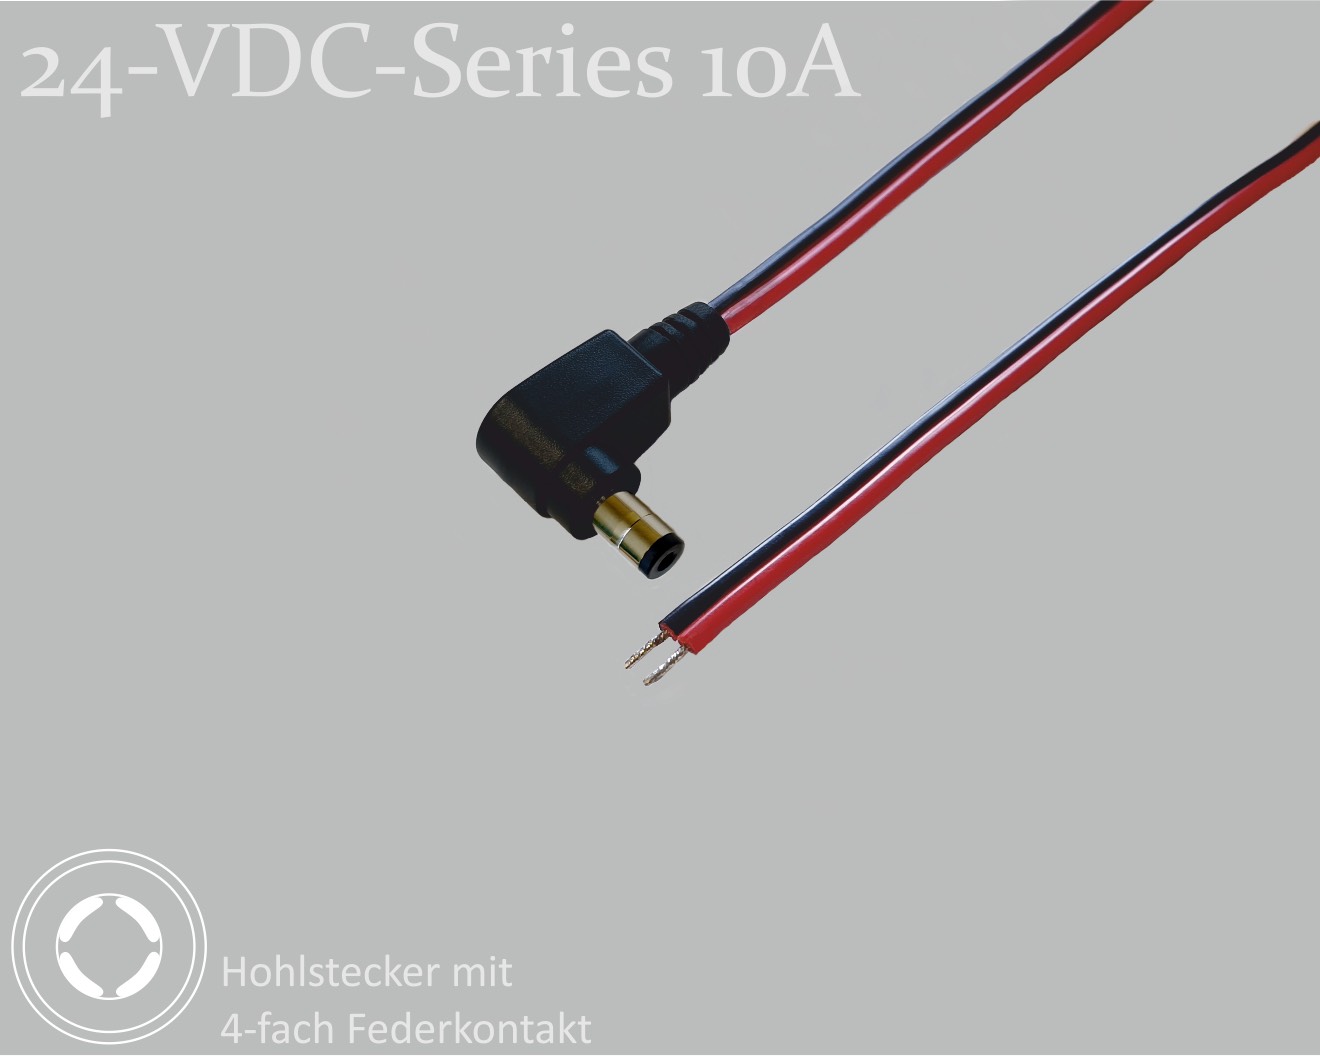 24-VDC-Series 10A, DC-Anschlusskabel, DC-Winkelstecker mit 4-Feder-Kontakt 2,1x5,5x9,5mm, Flachkabel 2x0,75mm², rot/schwarz, verzinnte Enden, 0,75m